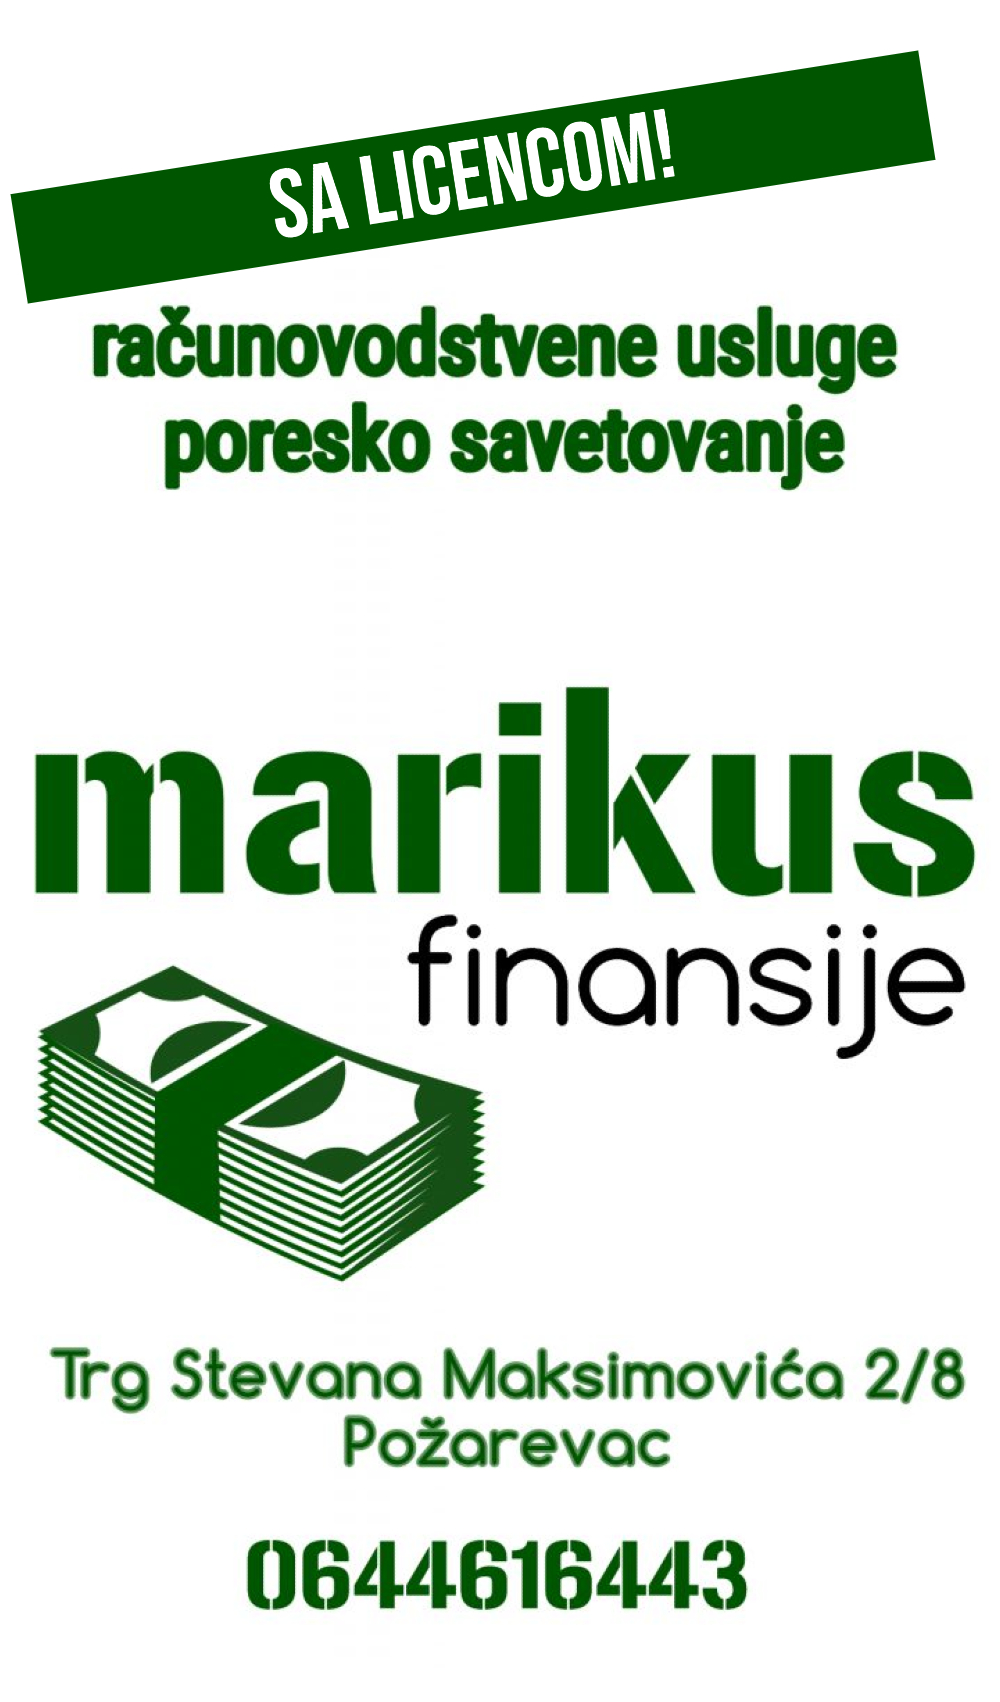 marikus finansije banner